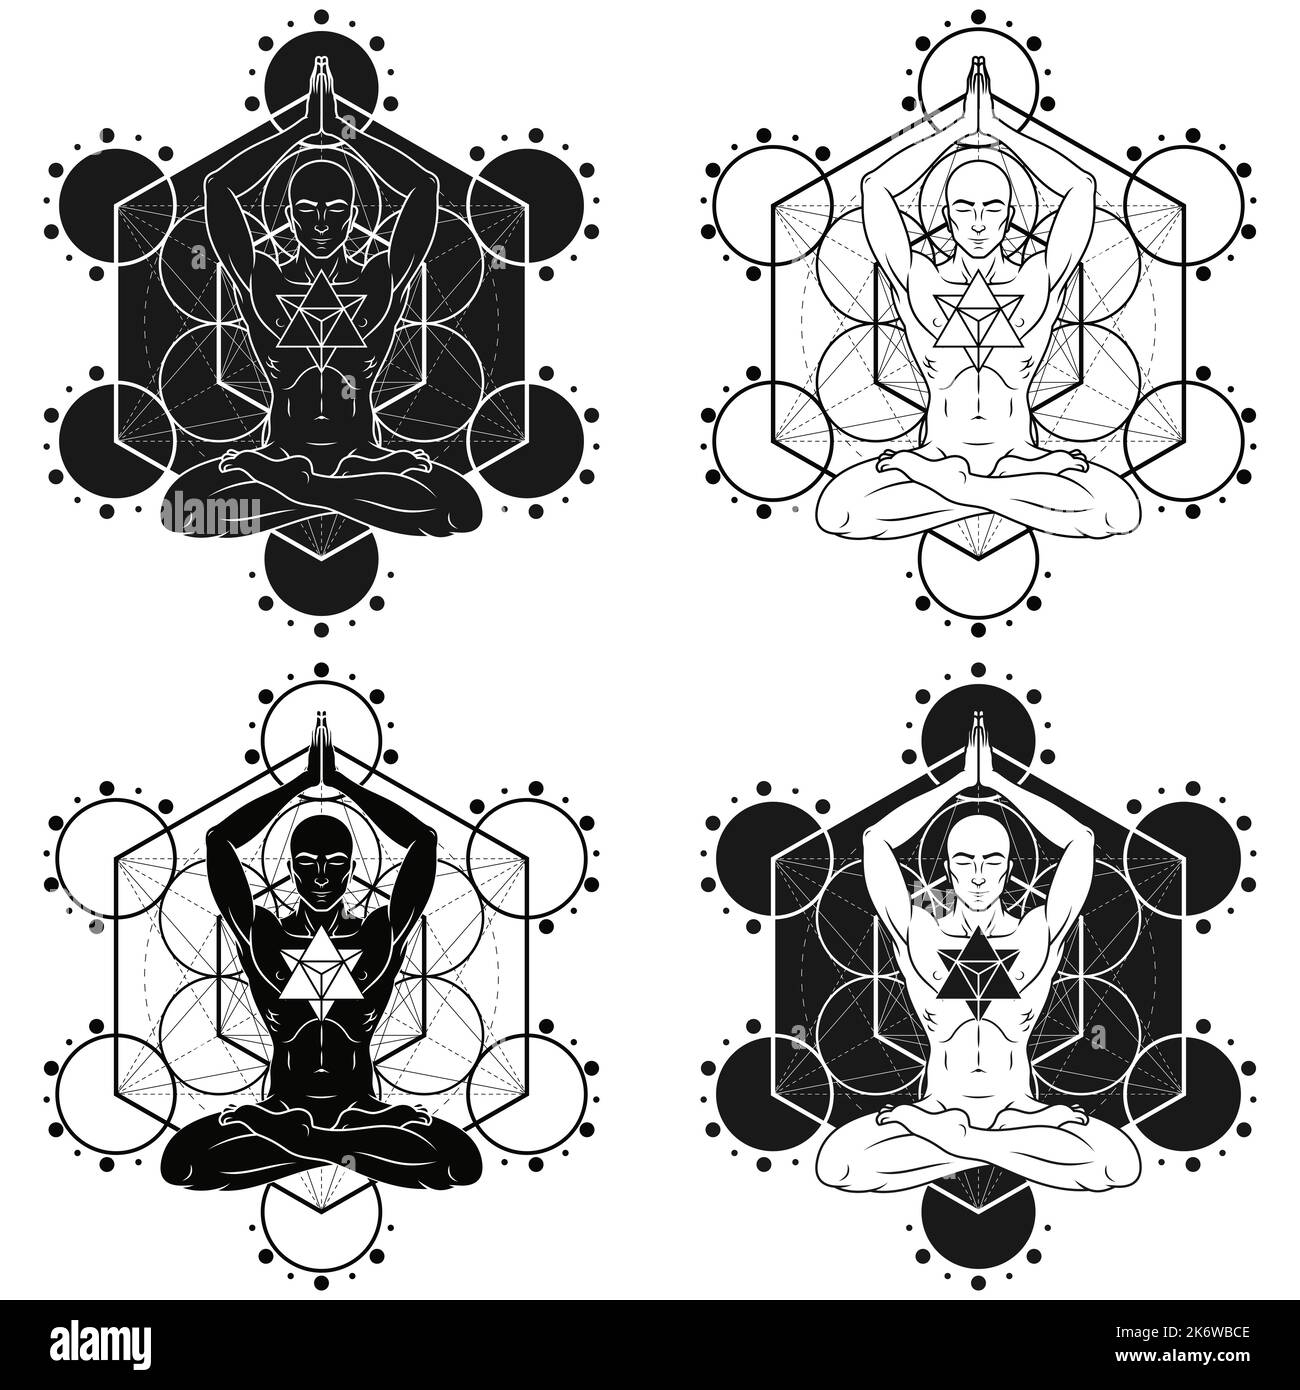 Dessin vectoriel de l'homme méditant en position lotus avec et Merkaba, homme faisant le yoga et la figure metatron en arrière-plan Illustration de Vecteur